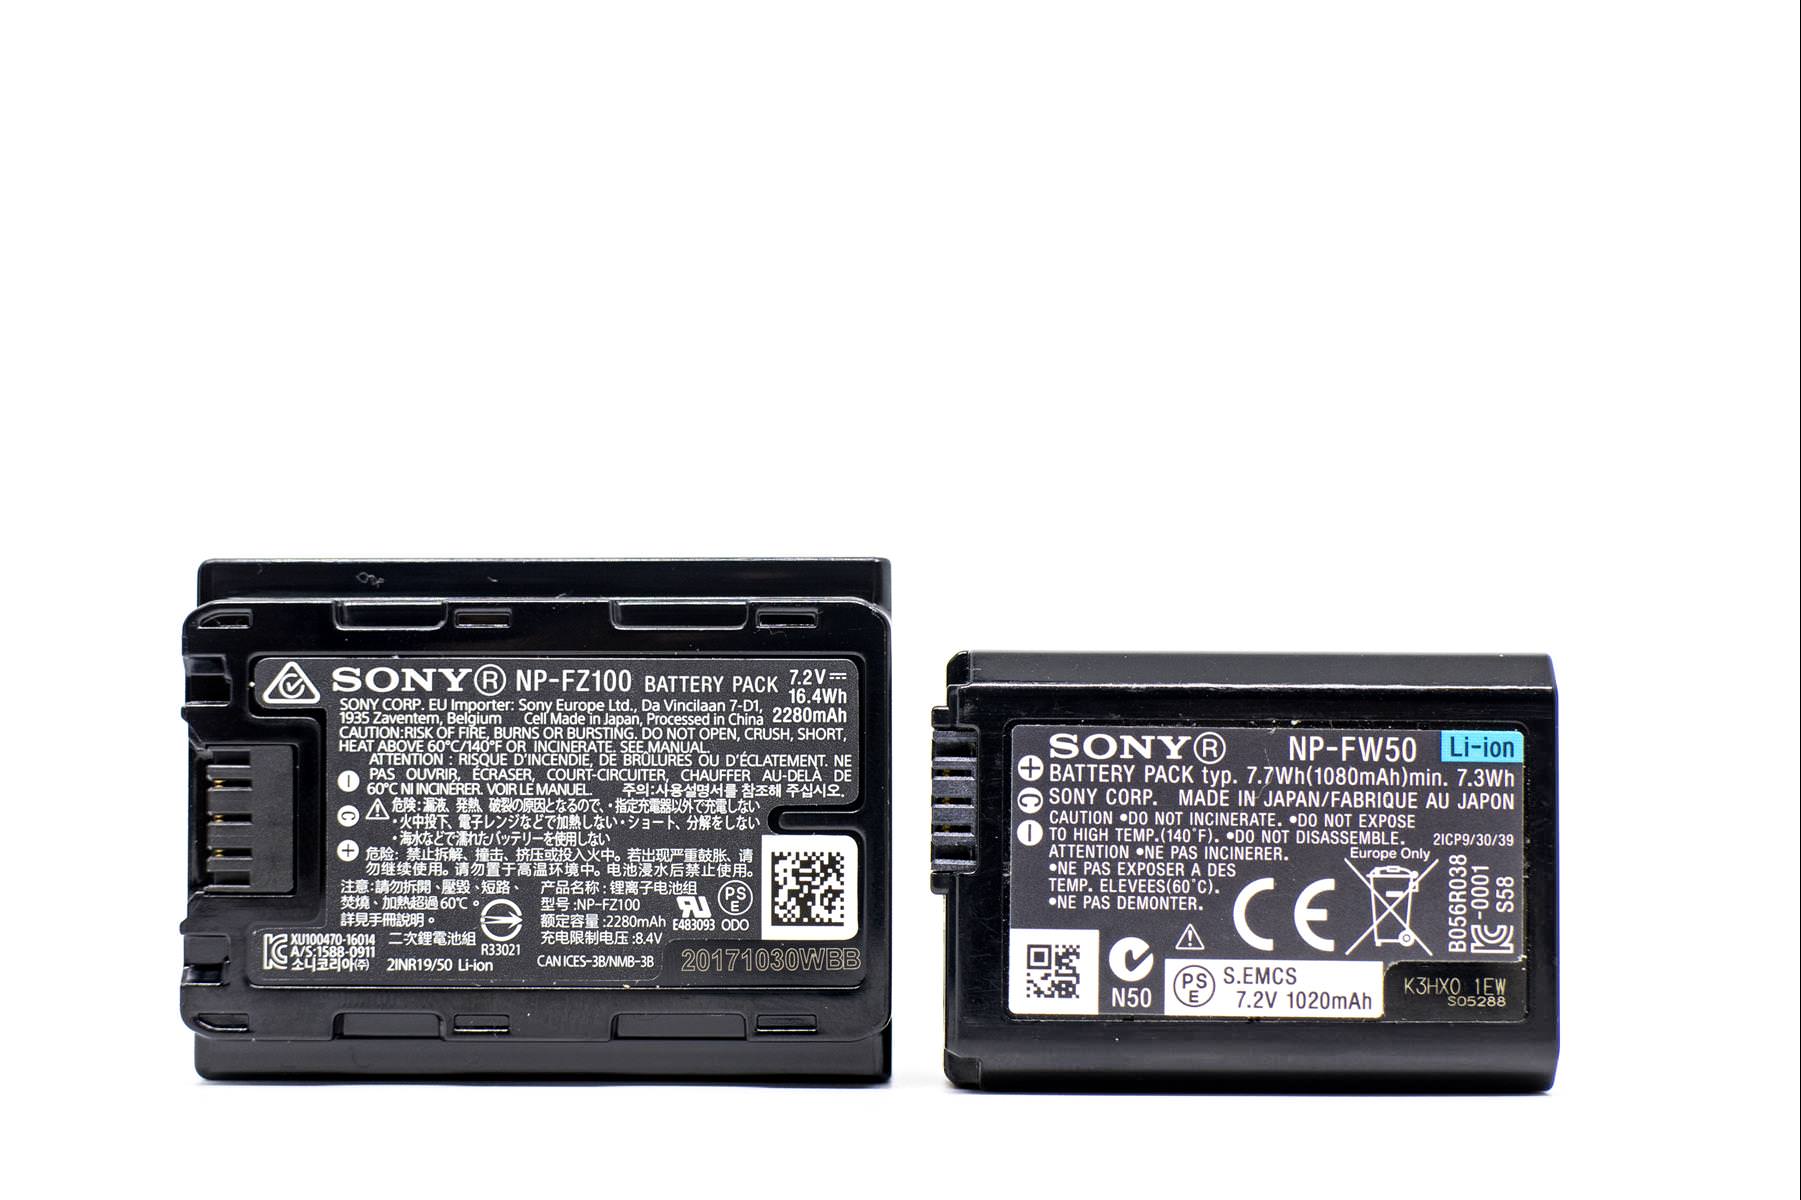 [比攝影86] Sony A7R3 開箱 - A7R3 主要特點介紹,與 A7S2 外觀配件一齊比較